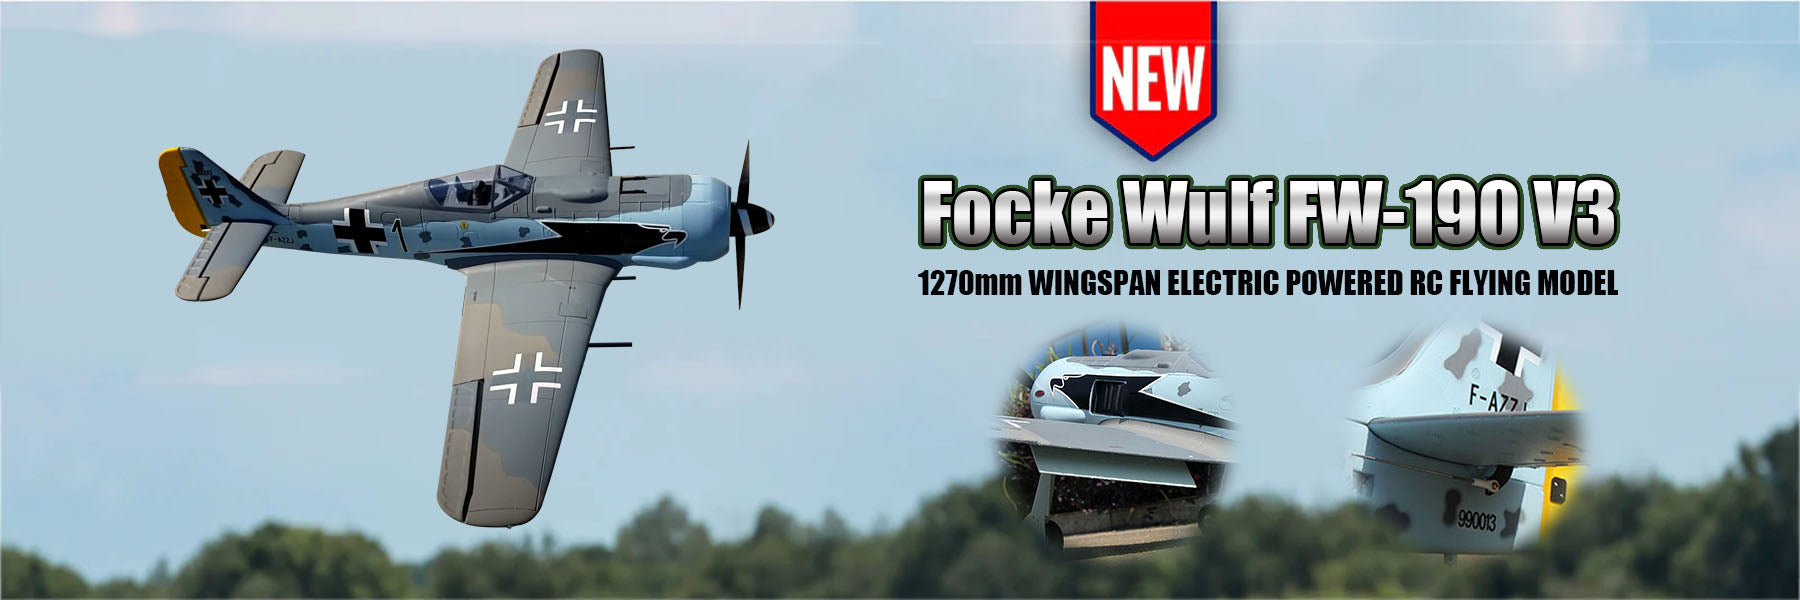 Dynam Focke Wulf FW-190 V3 Banner